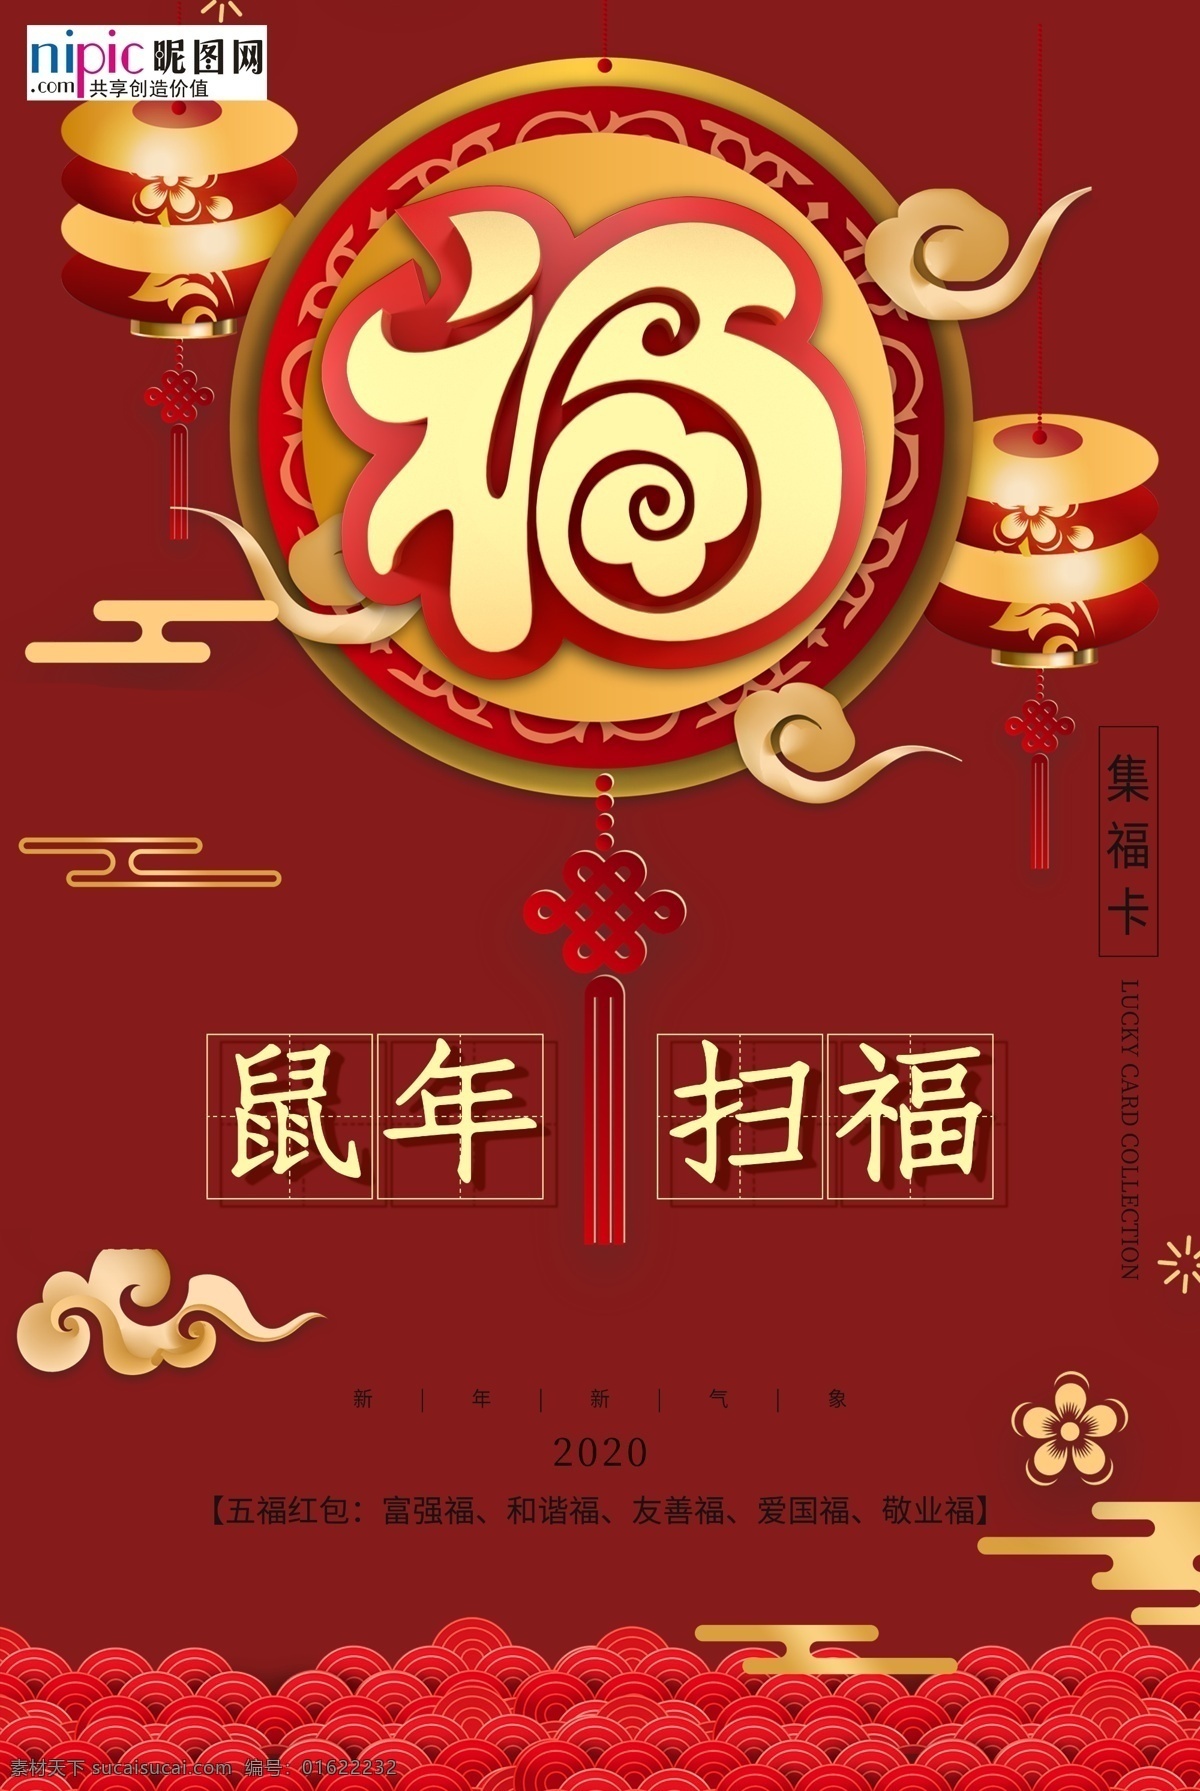 鼠年 红色 中 国风 海报 扫福 福字 2020 灯笼红 金黄色 中国风